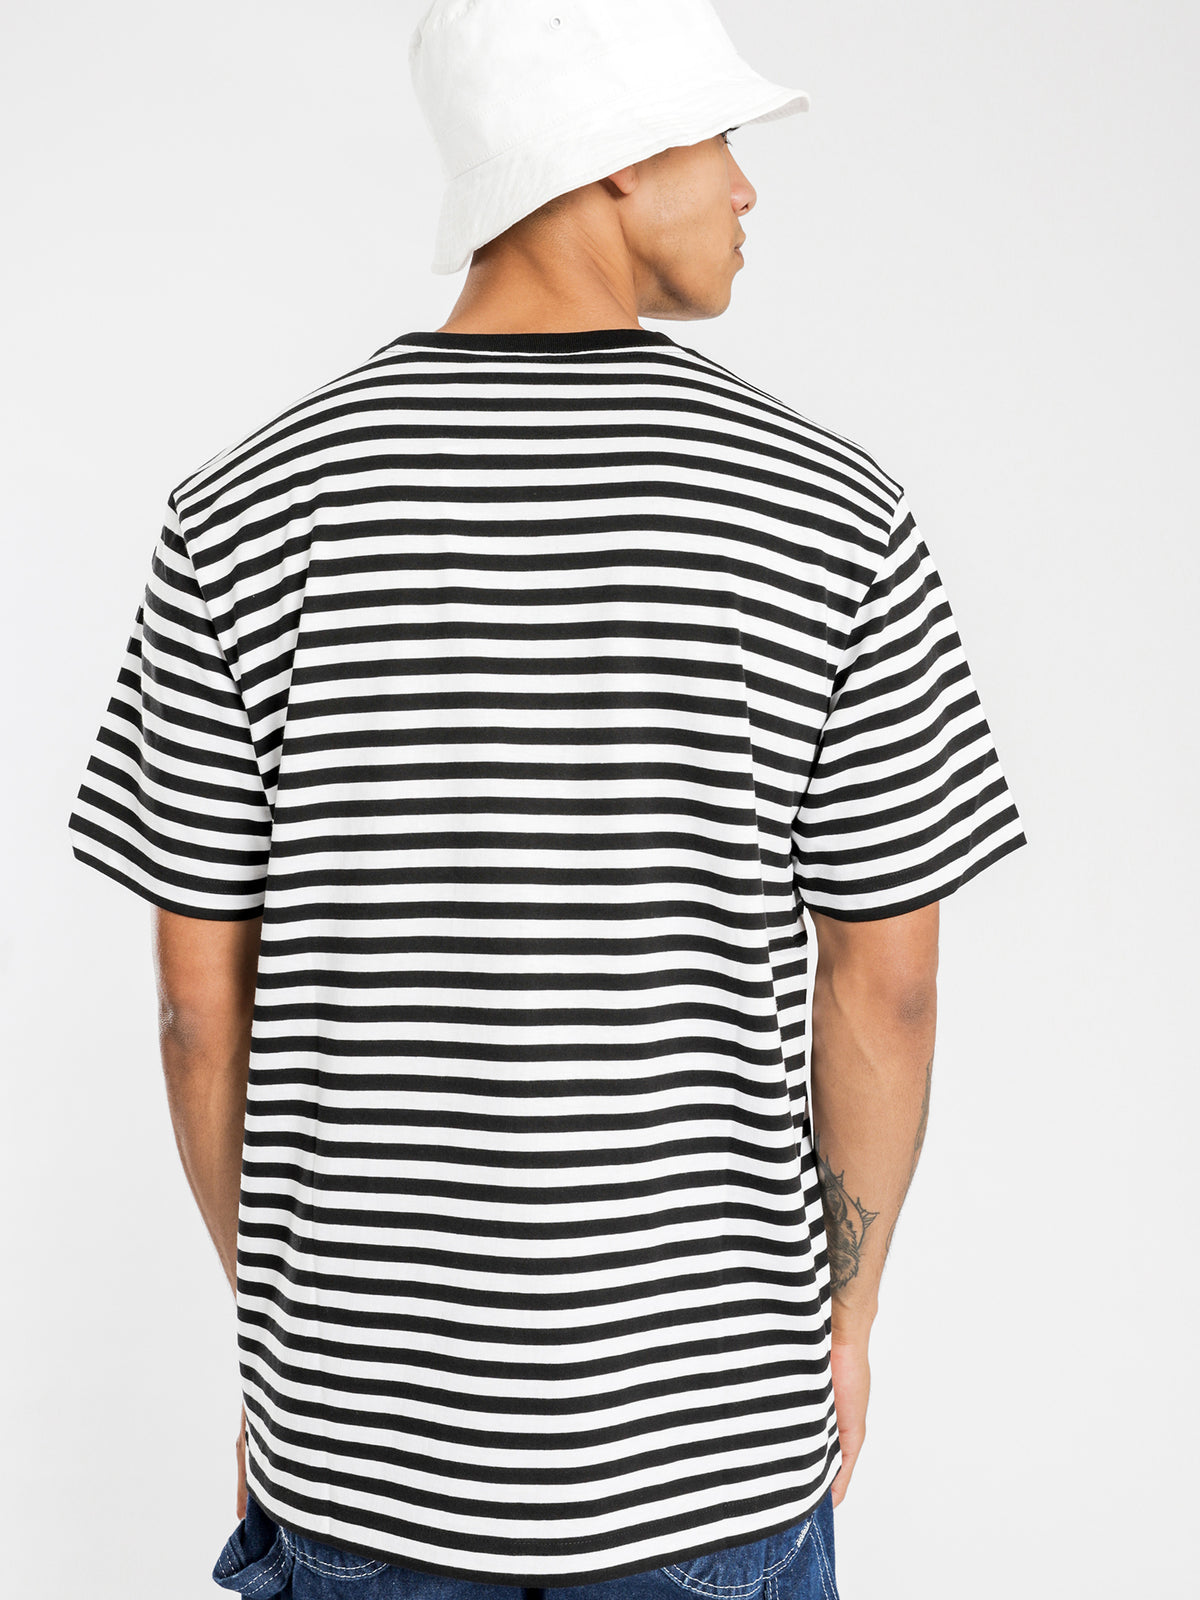 Haldon Pocket Short Sleeve T-Shirt in Black &amp; White Stripe